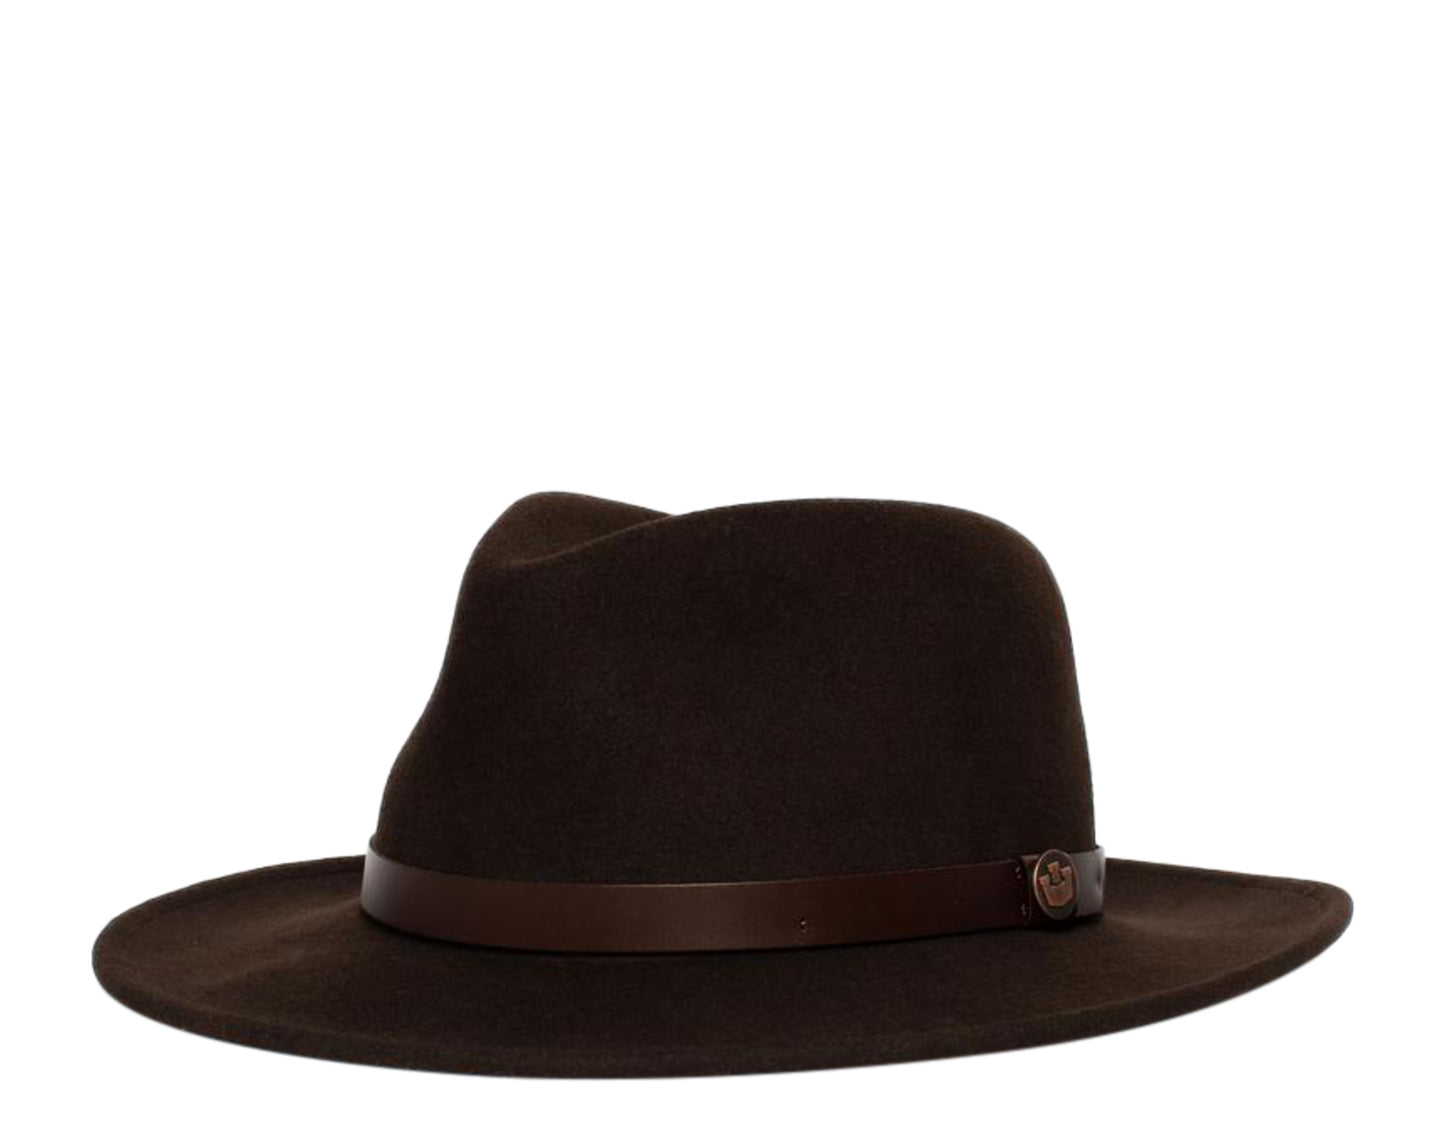 Goorin Bros Heritage Doctor Jones Fedora Men's Hat